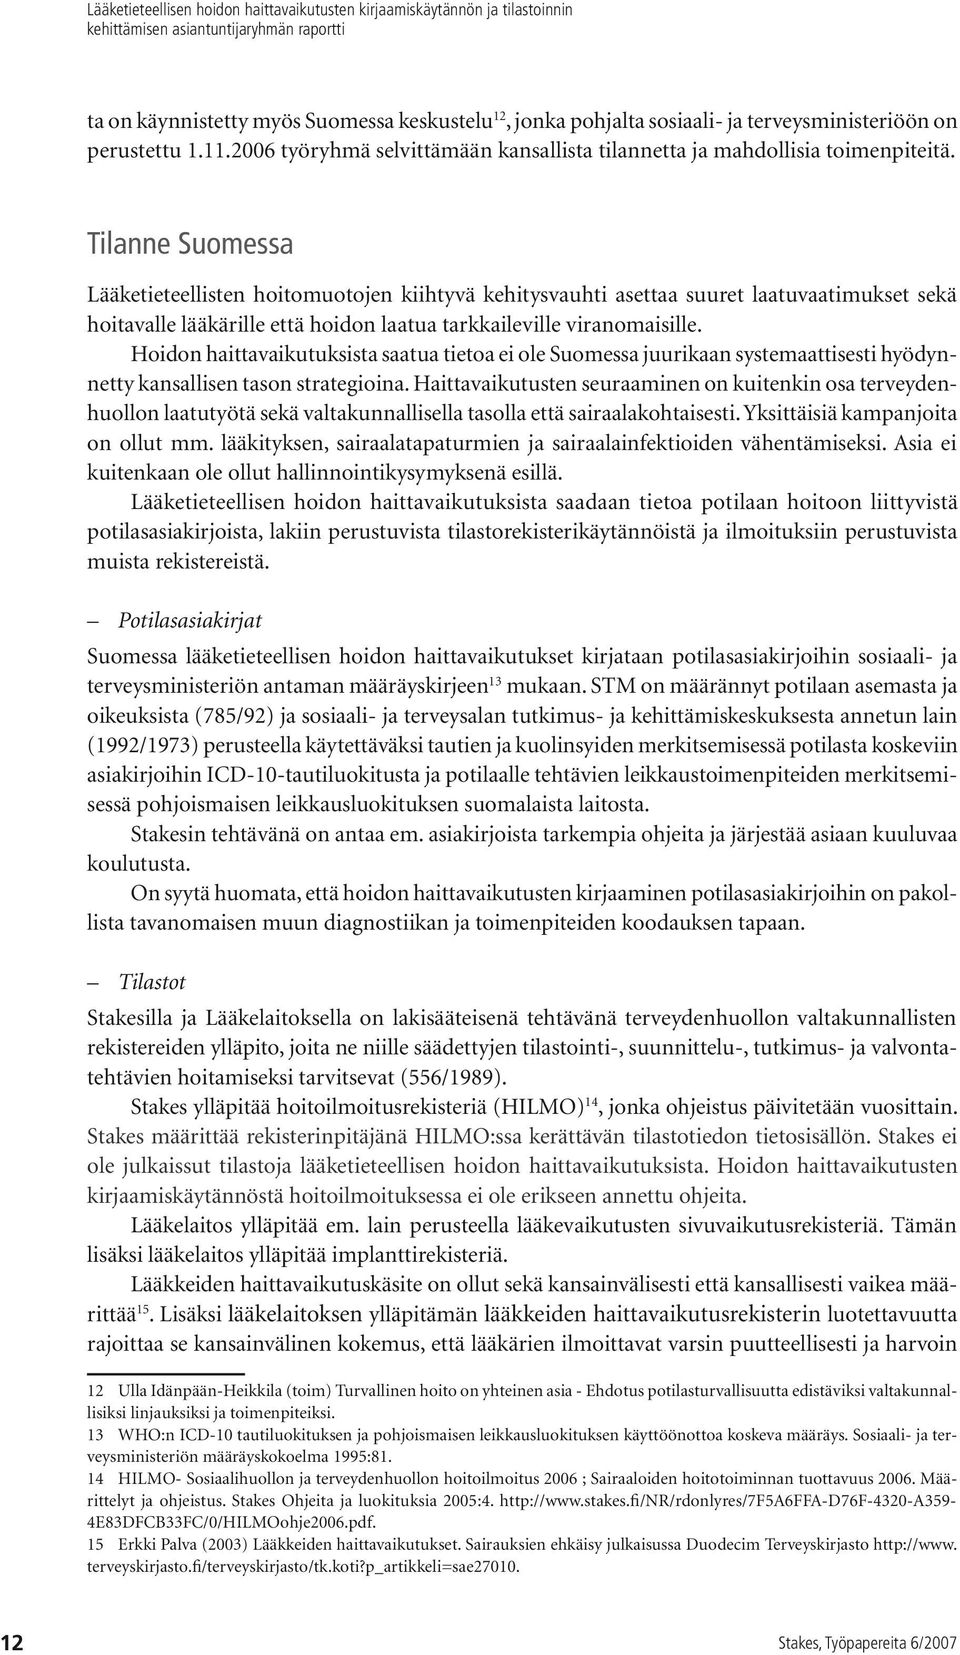 Hoidon haittavaikutuksista saatua tietoa ei ole Suomessa juurikaan systemaattisesti hyödynnetty kansallisen tason strategioina.